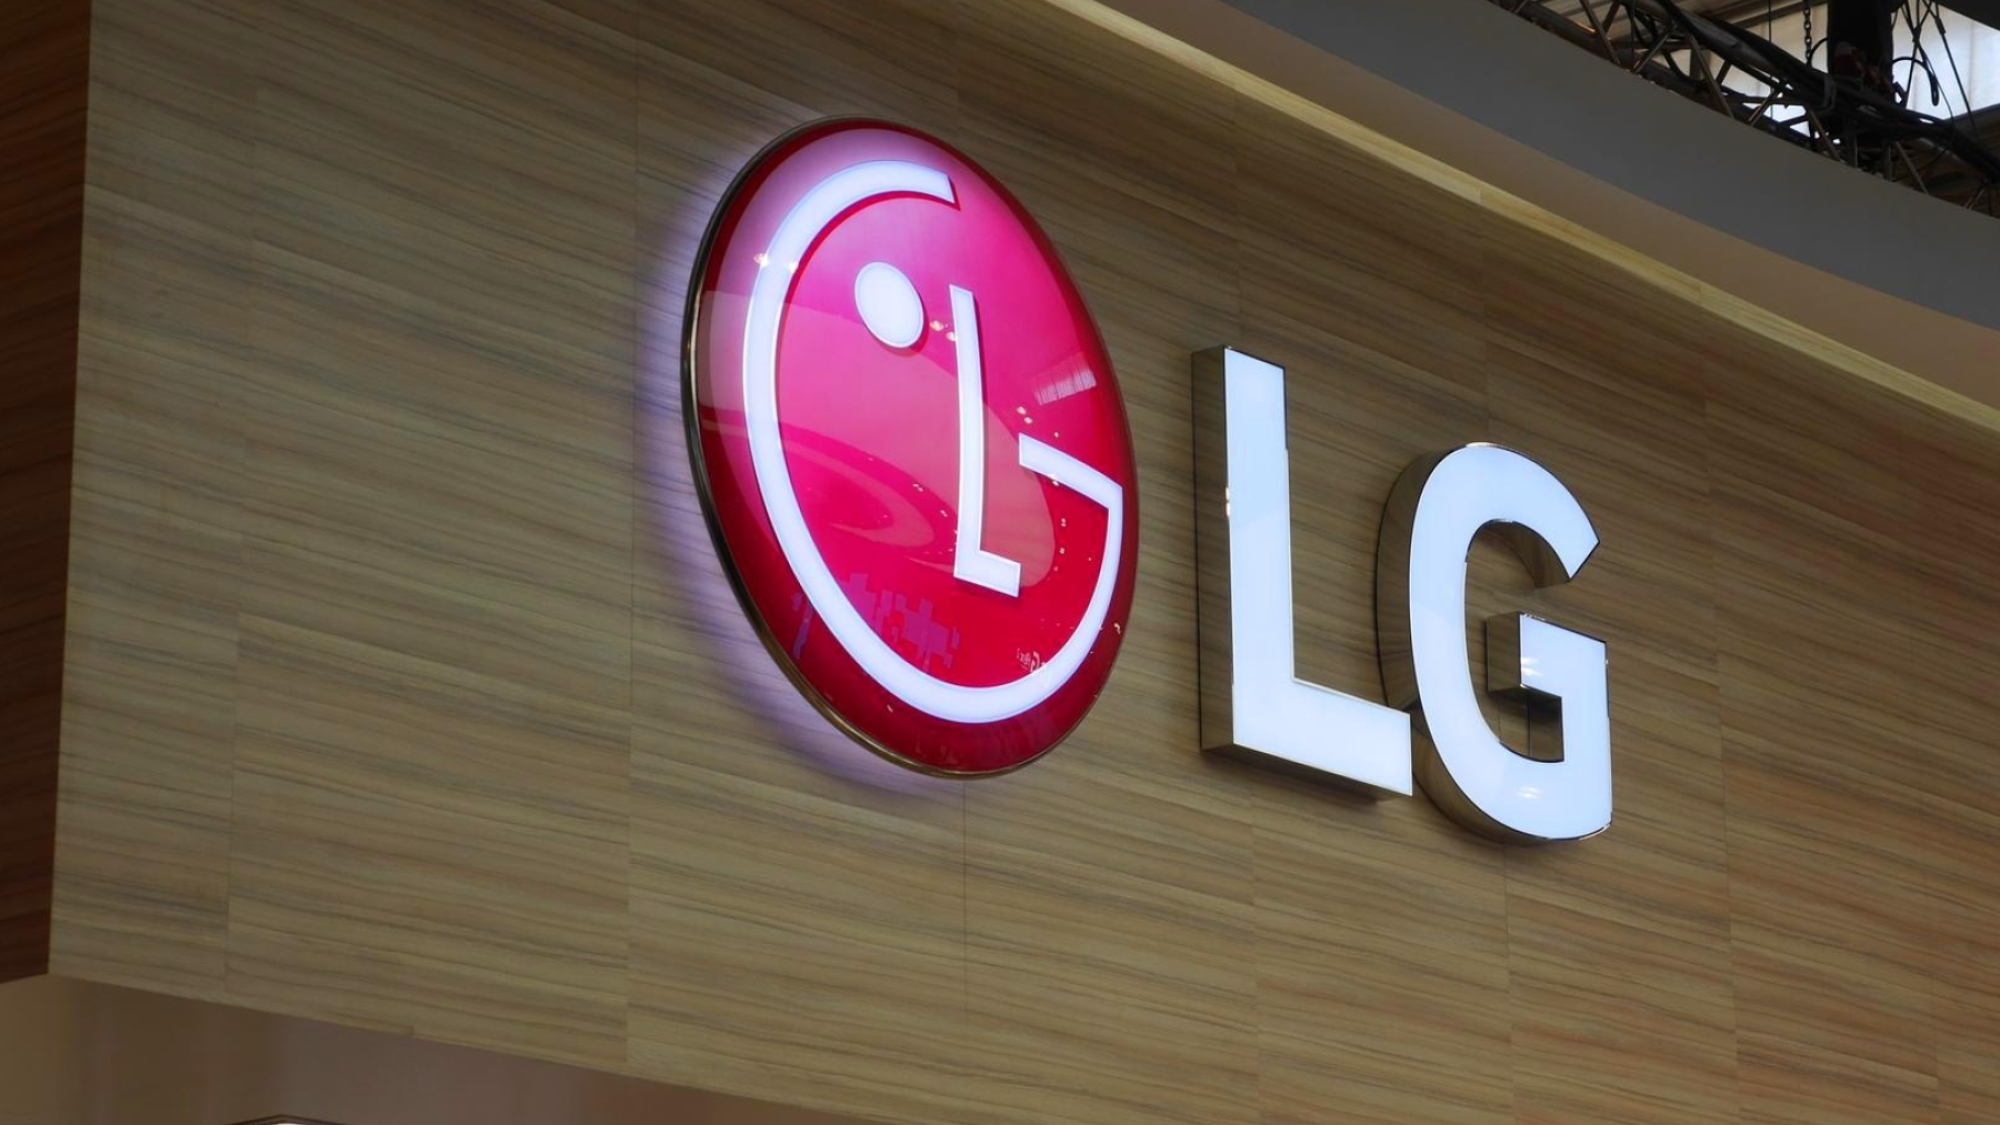 Lg products. LG Electronics Корея. LG Electronics логотип. LG Electronics и LG display. LG Electronics Украина.